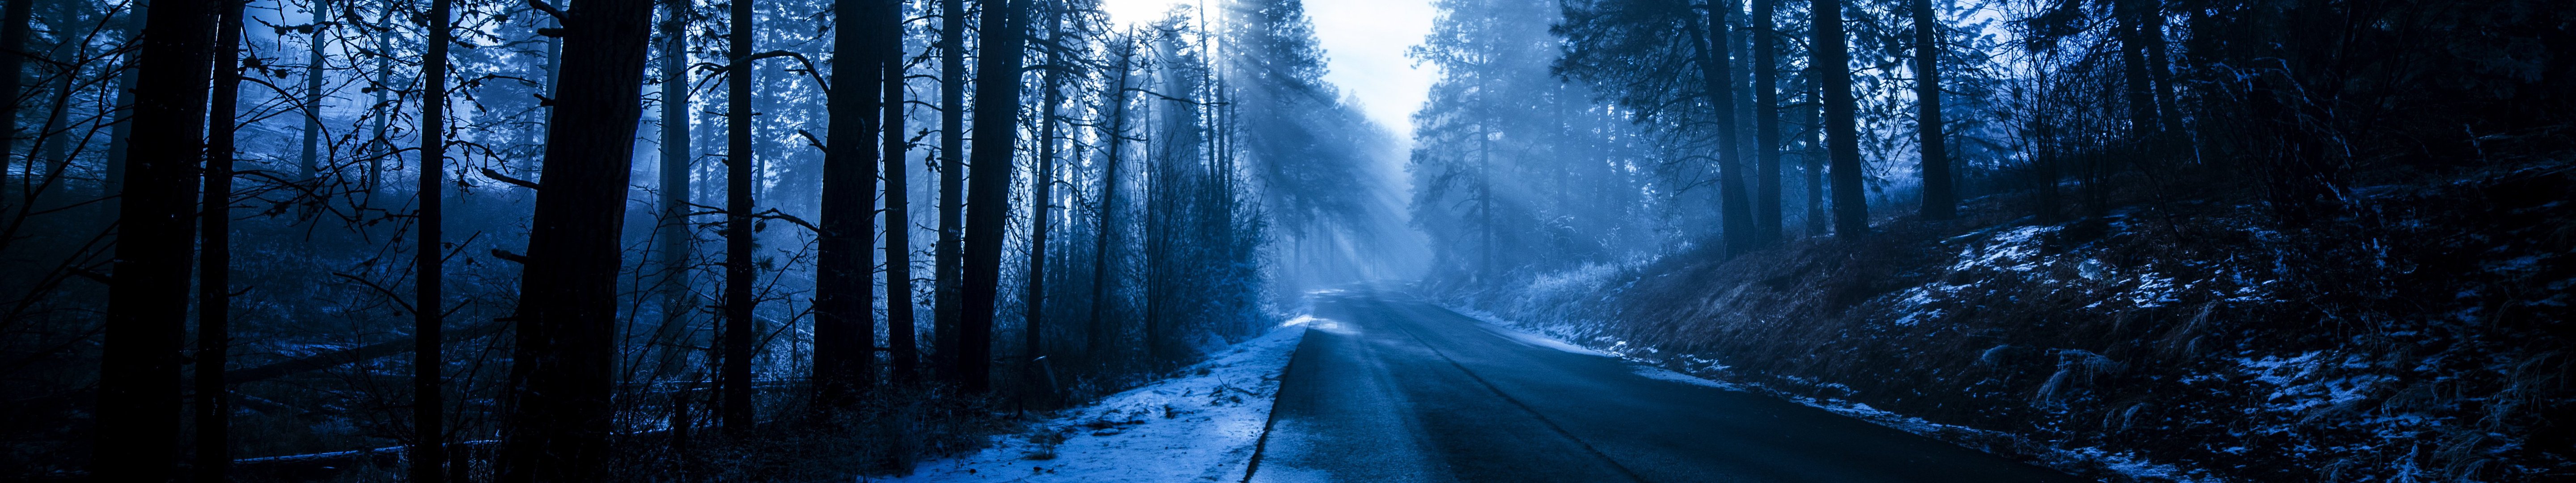 Mùa đông là thời điểm lý tưởng để đắm chìm vào thiên nhiên và cảm nhận một cảm giác thực sự khác biệt. Nhảy lên xe hơi và khám phá con đường đầy tuyết này để tìm hiểu sự đẹp của mùa đông. Xem hình ảnh liên quan để cùng trải nghiệm mùa đông.